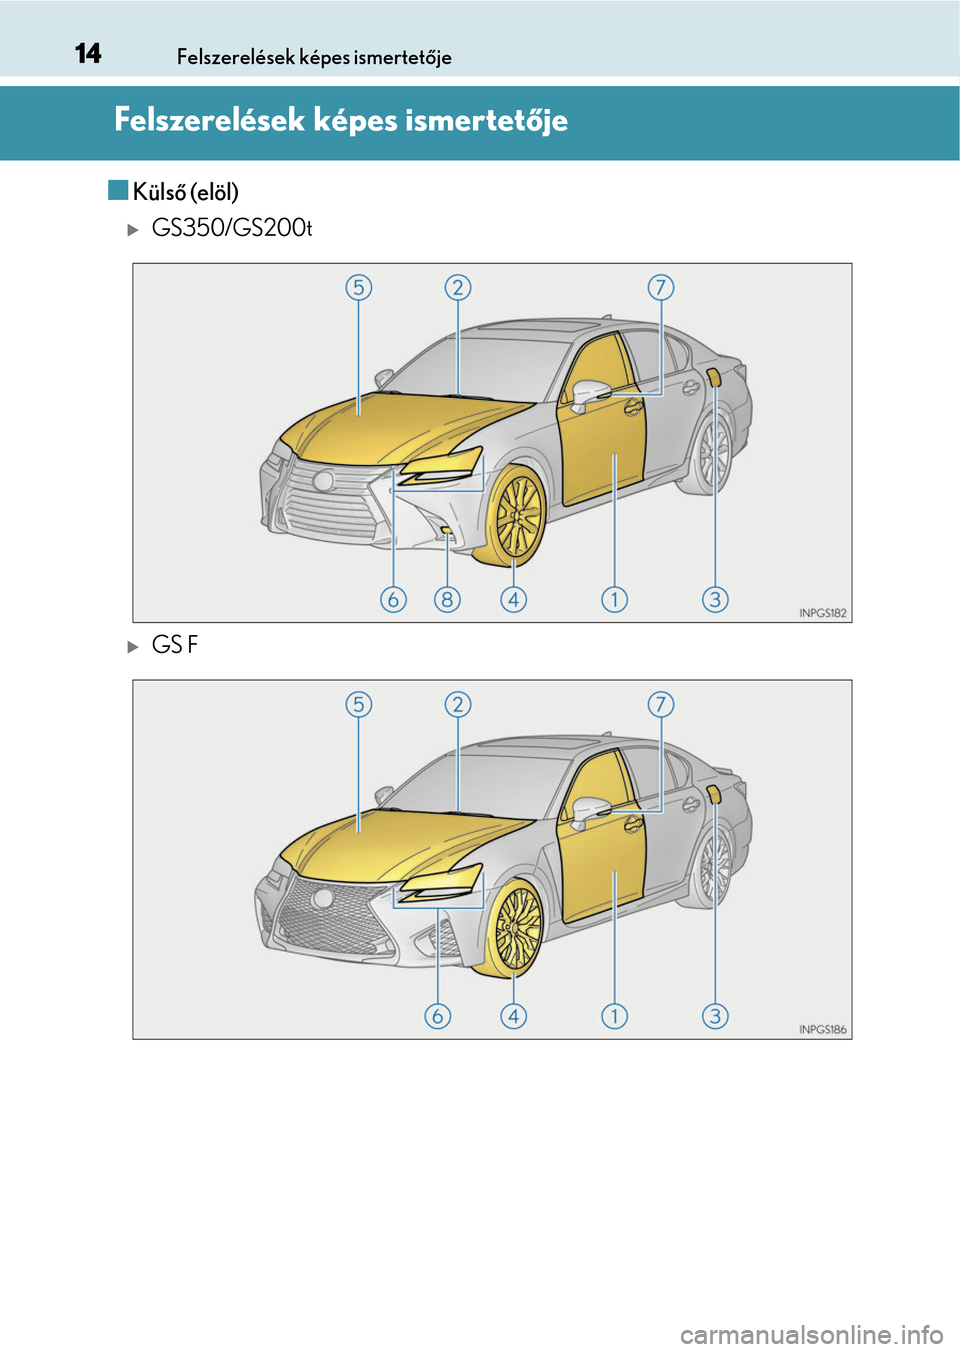 Lexus GS350 2015  Kezelési útmutató (in Hungarian) 14Felszerelések képes ismertetője
Felszerelések képes ismertetője
Külső (elöl)
GS350/GS200t
GS F 